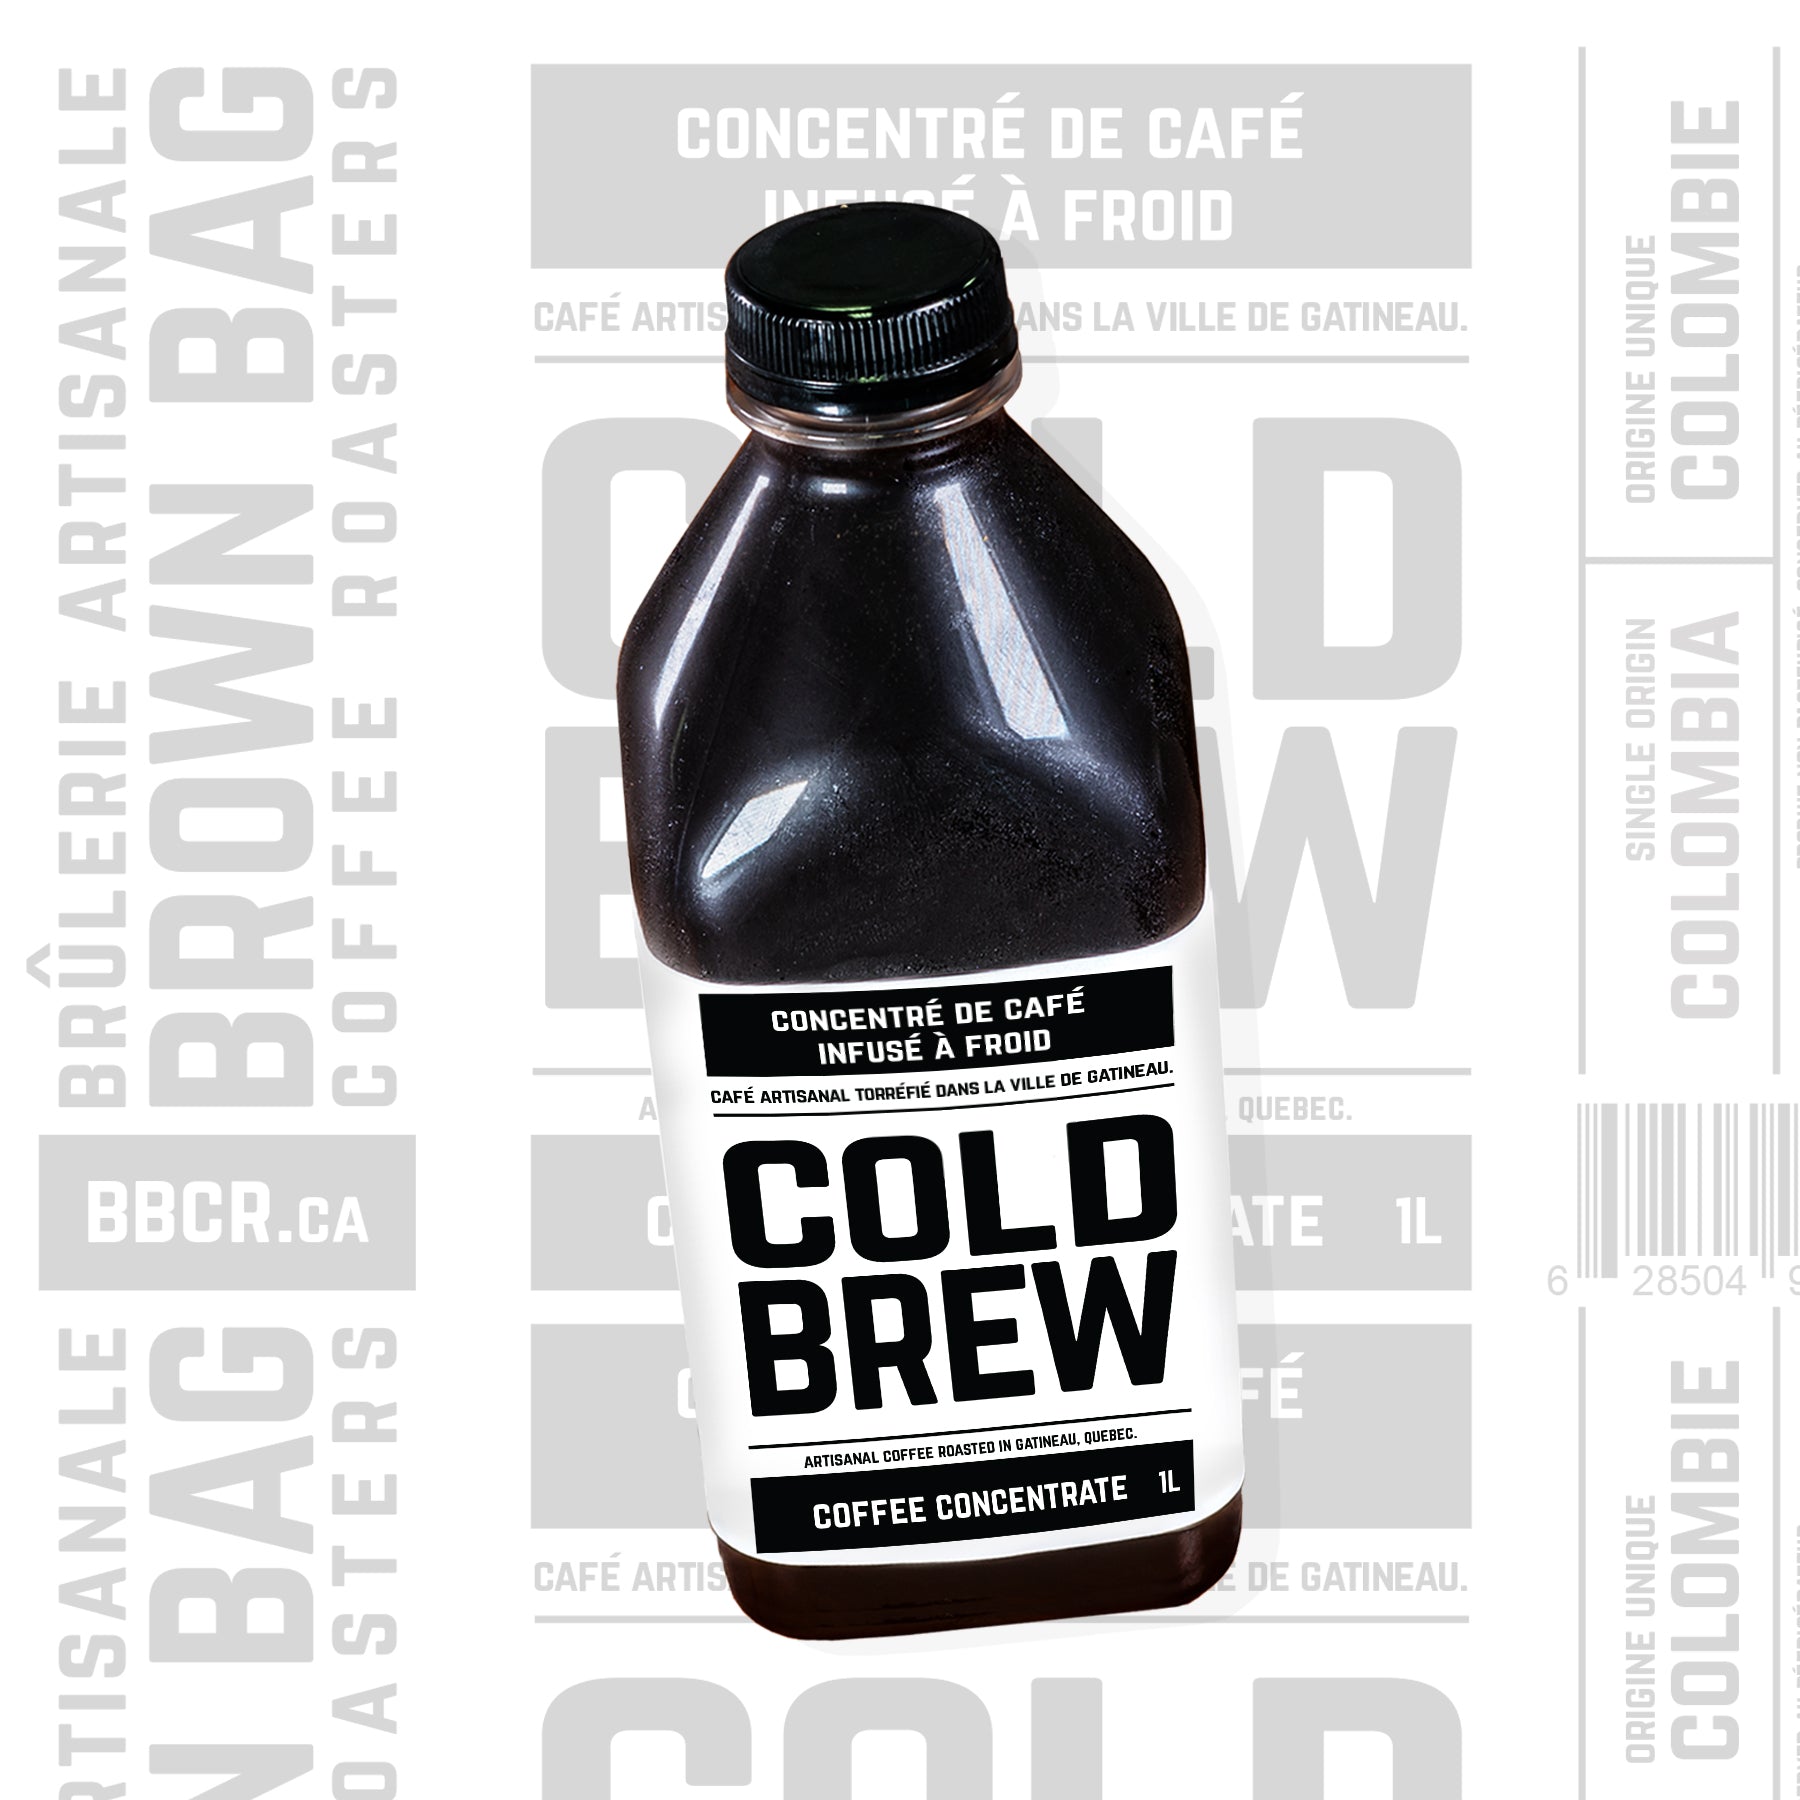 COLD BREW - Concentré de café infusé à froid | Coffee Concentrate